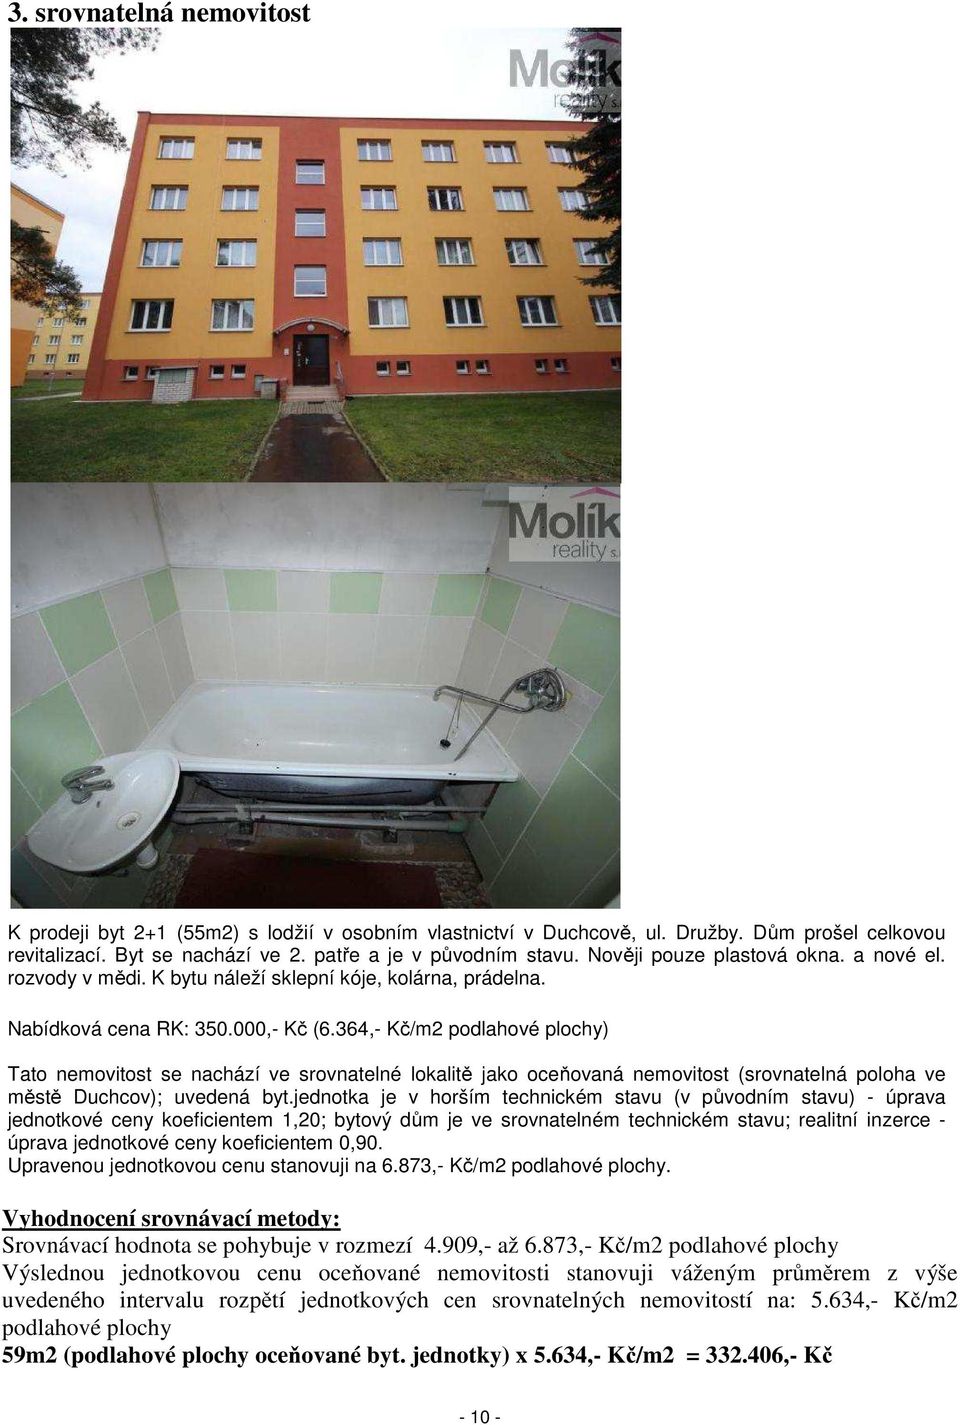 364,- Kč/m2 podlahové plochy) Tato nemovitost se nachází ve srovnatelné lokalitě jako oceňovaná nemovitost (srovnatelná poloha ve městě Duchcov); uvedená byt.